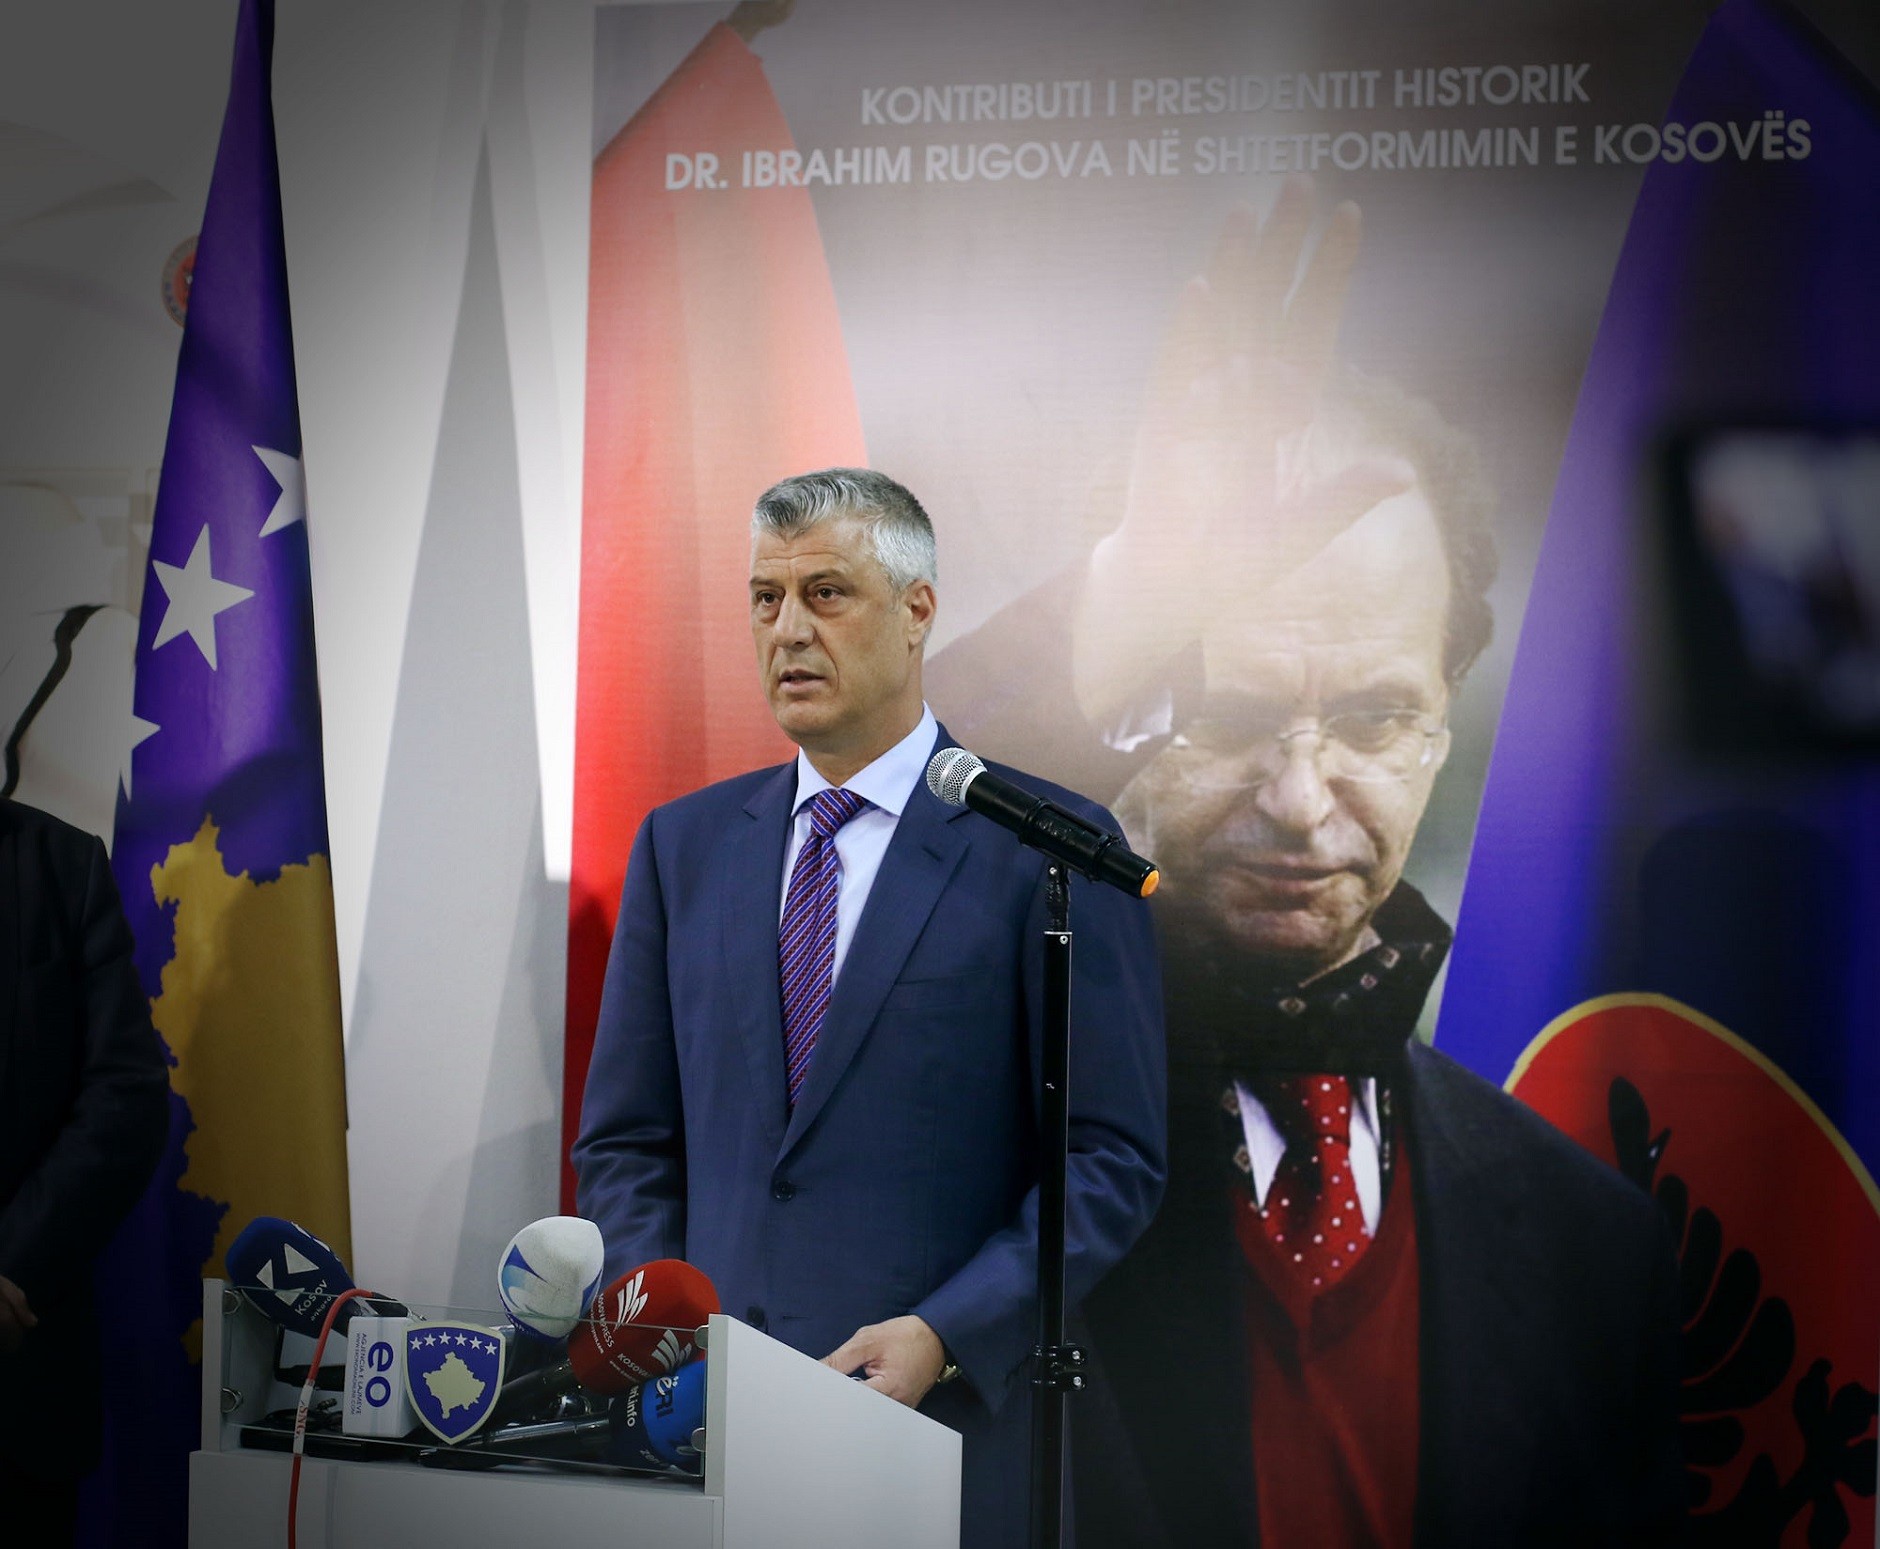 Presidenti Rugova e bindi botën për të drejtën e Kosovës për liri dhe shtet